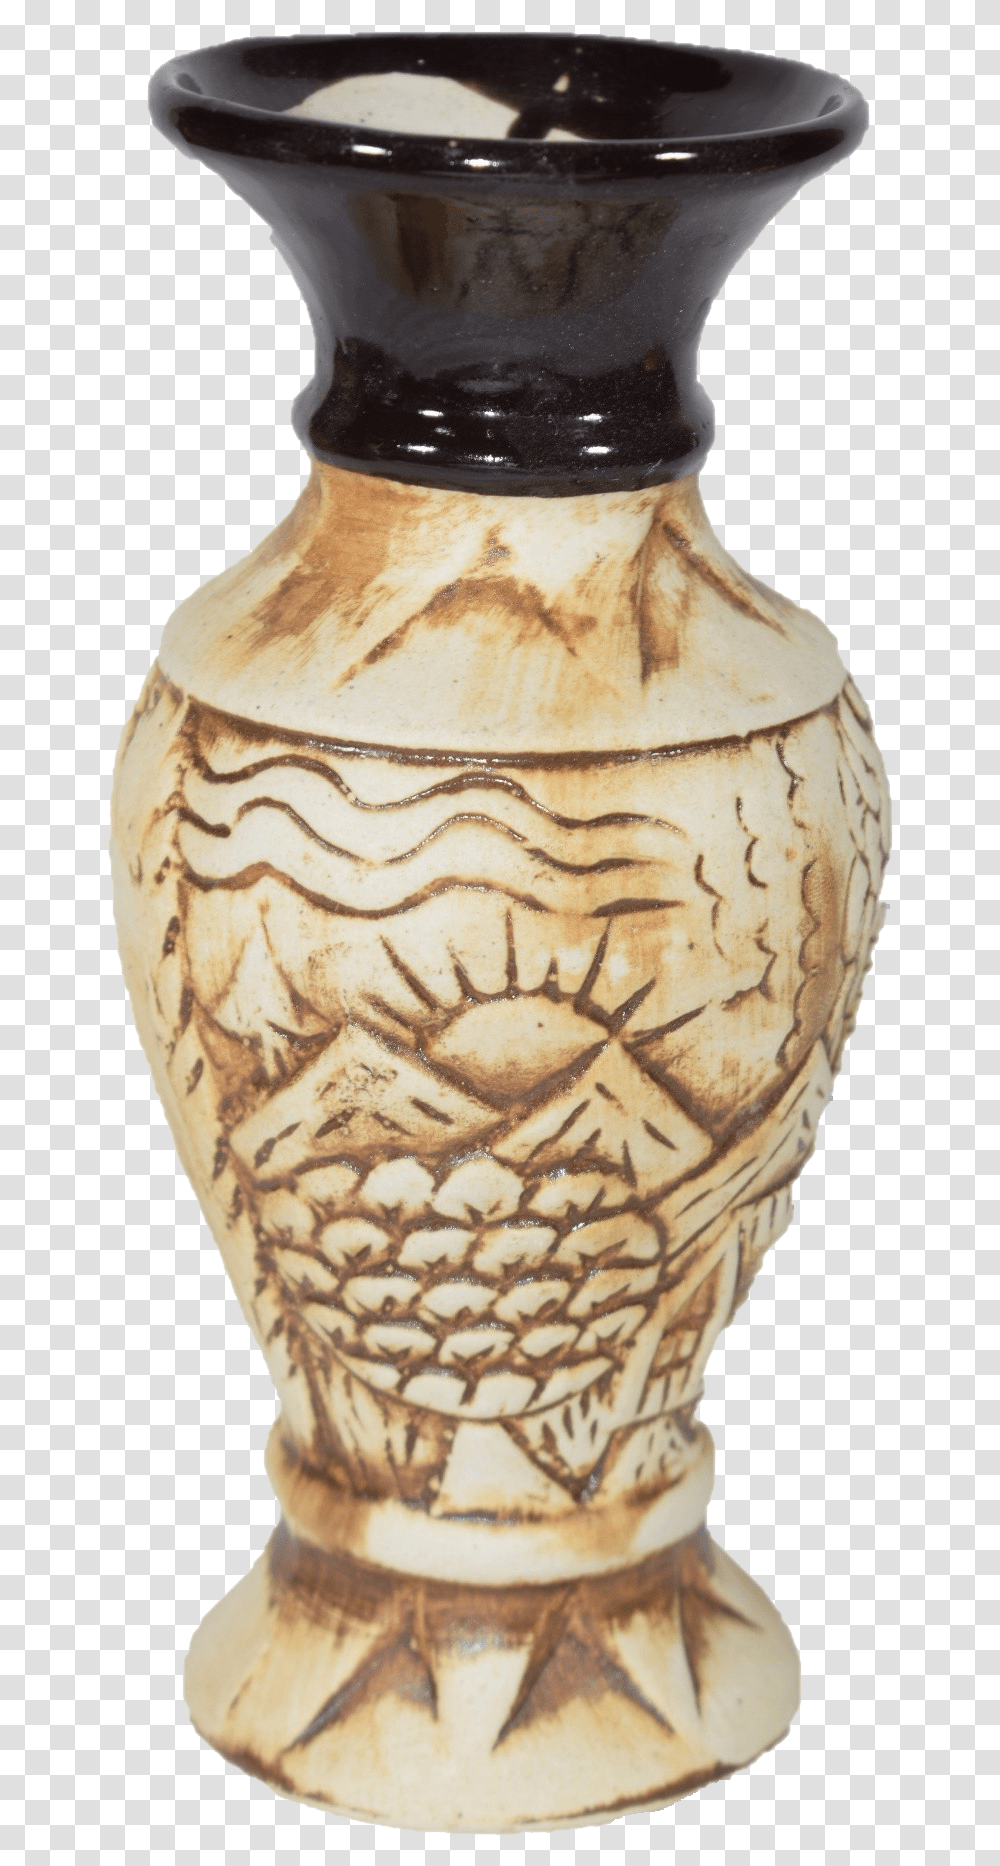 Vase Background, Urn, Jar, Pottery, Ice Cream Transparent Png